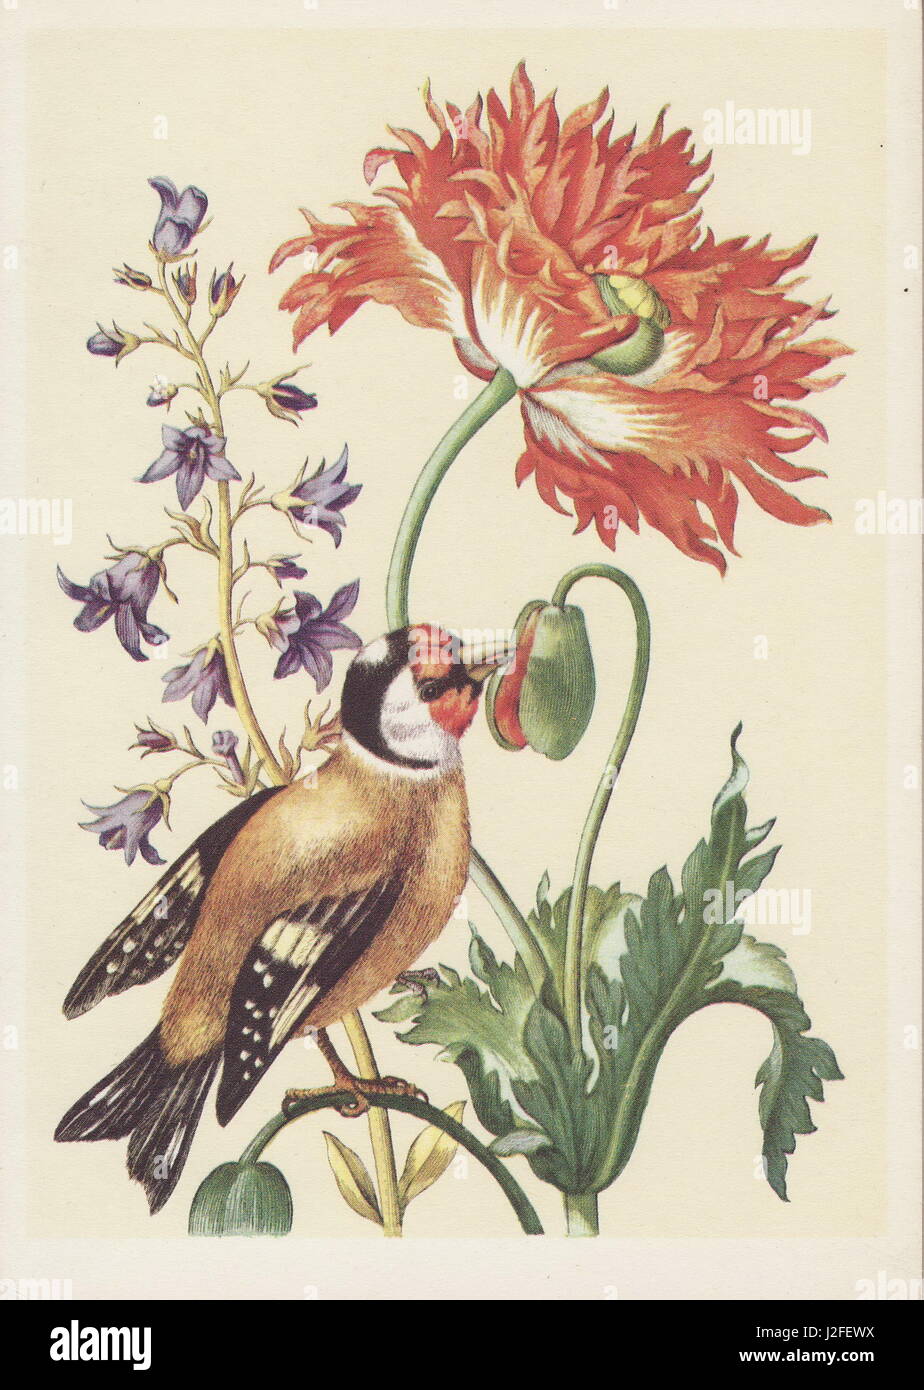 Carte postale ancienne de fleurs colorées. Banque D'Images